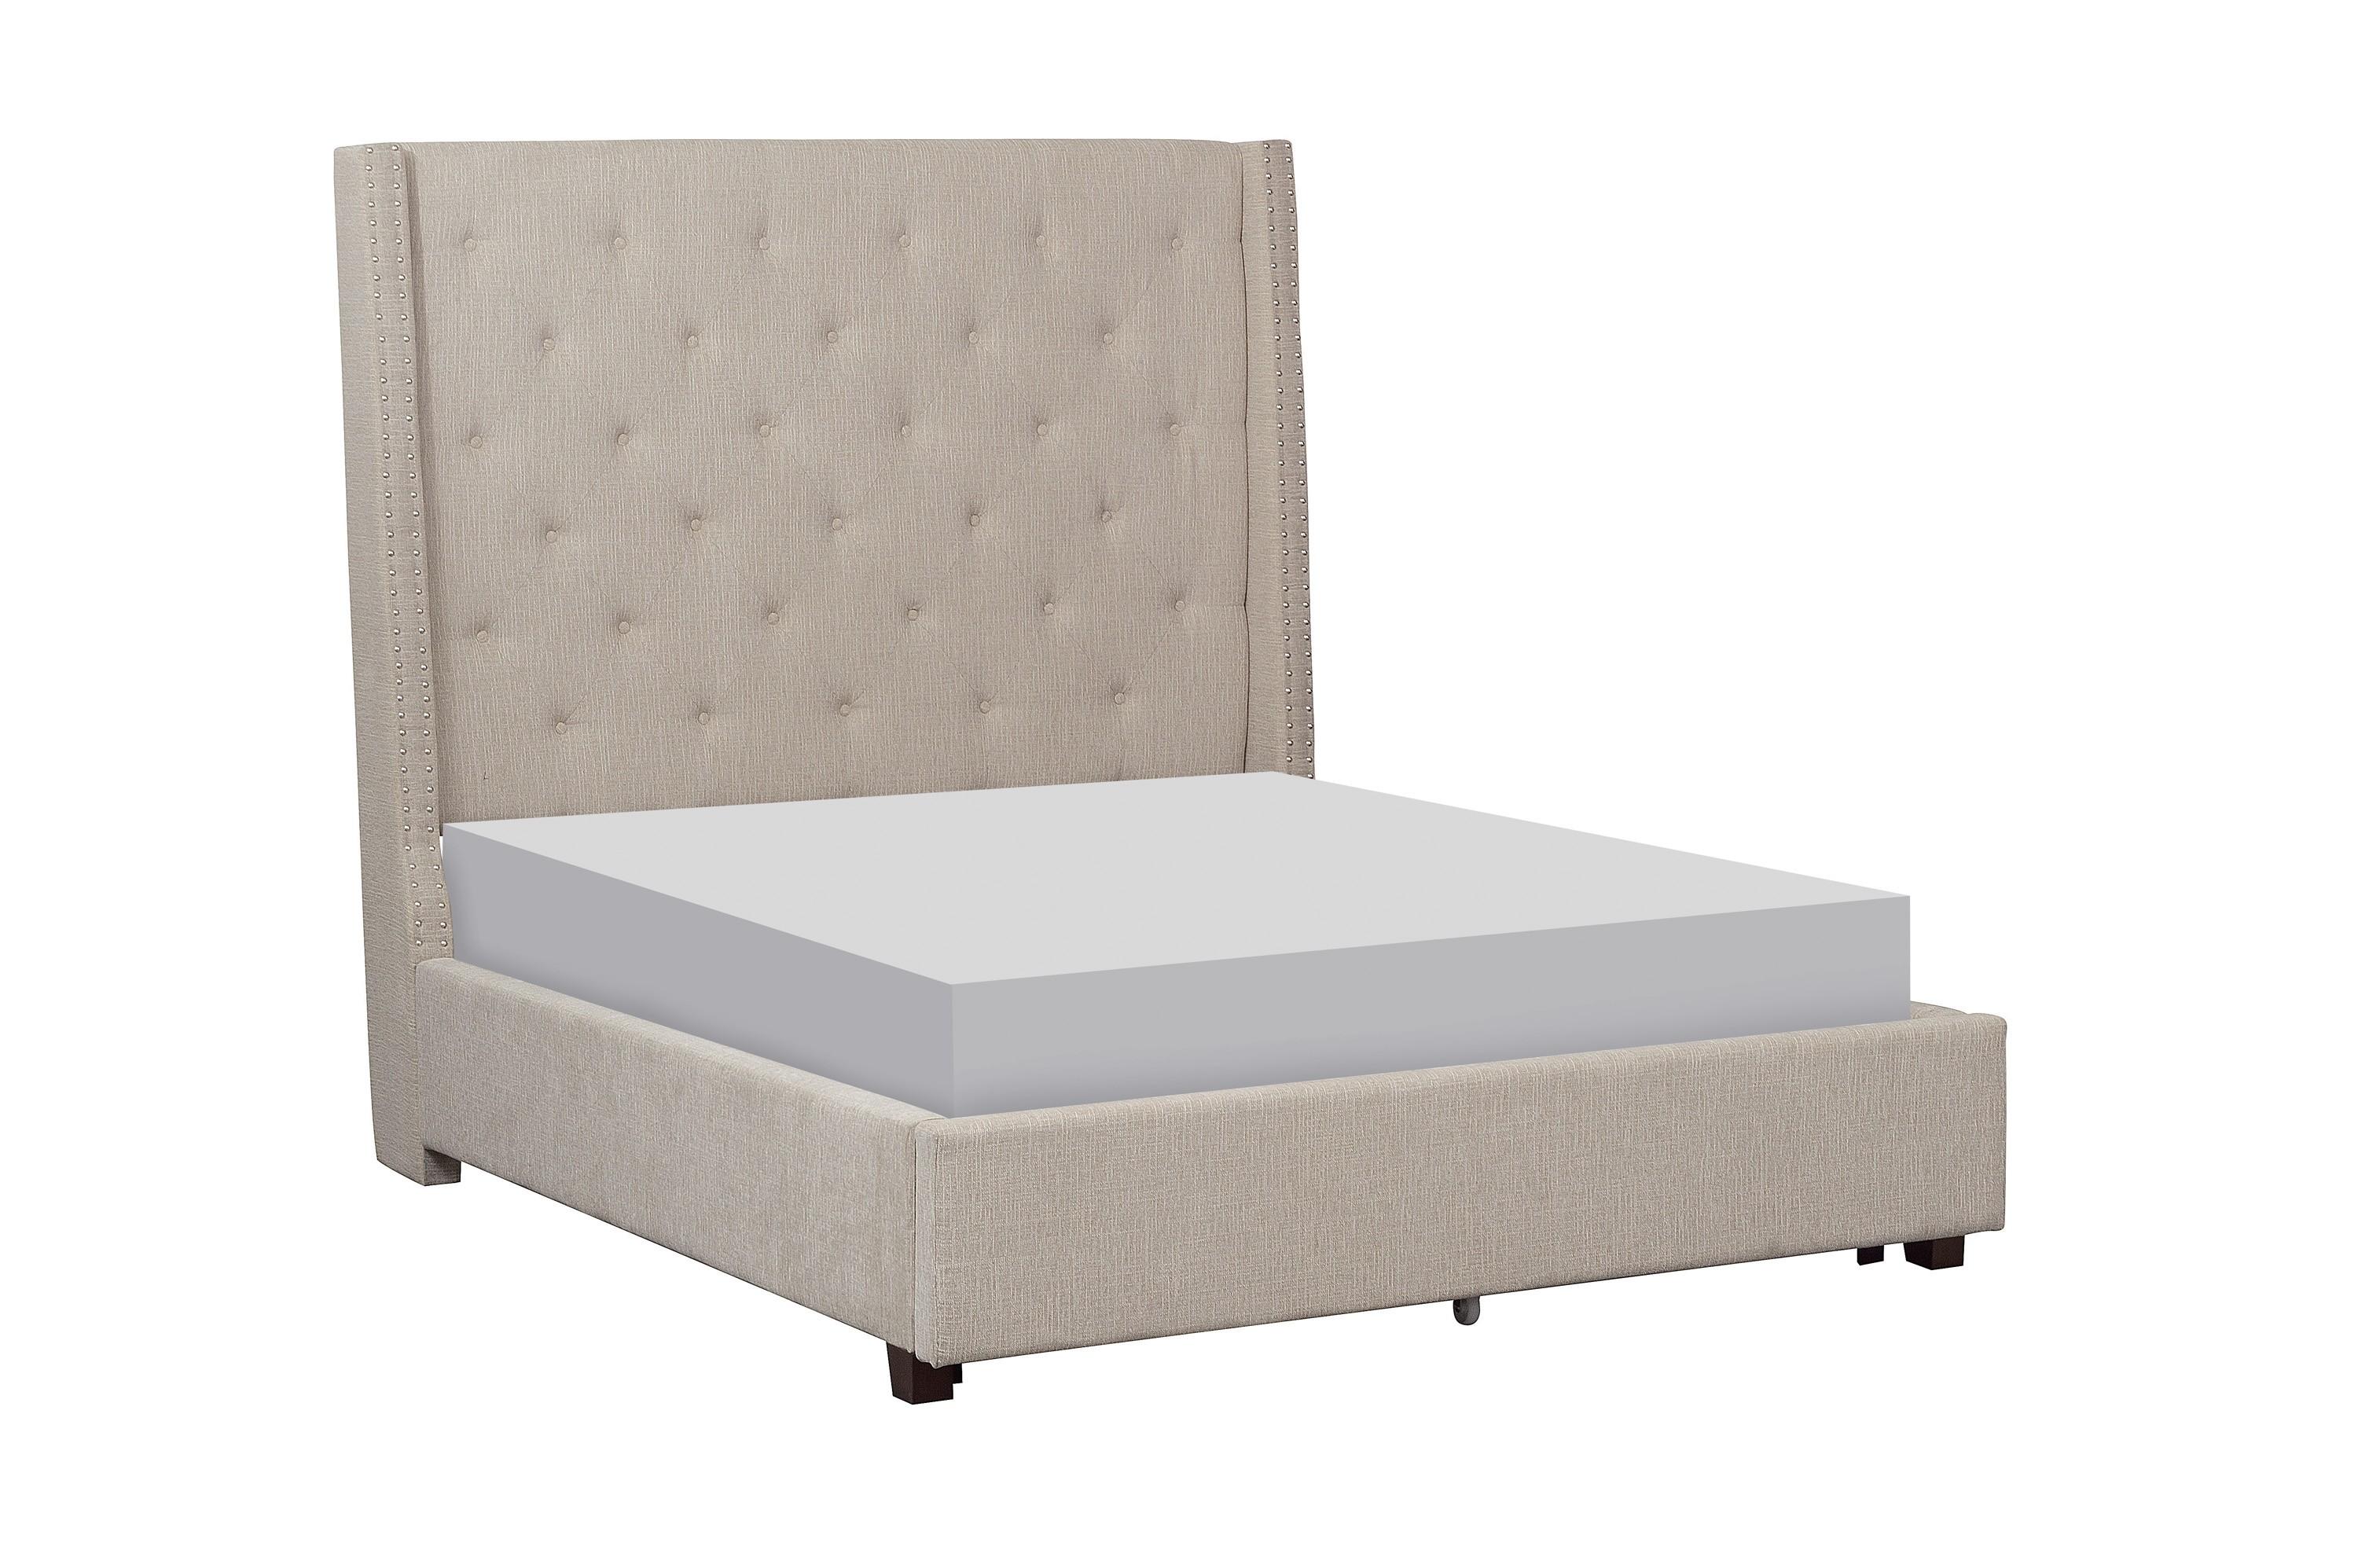 

    
Modern Beige Solid Wood CAL Bed Homelegance 5877KBE-1CK* Fairborn
